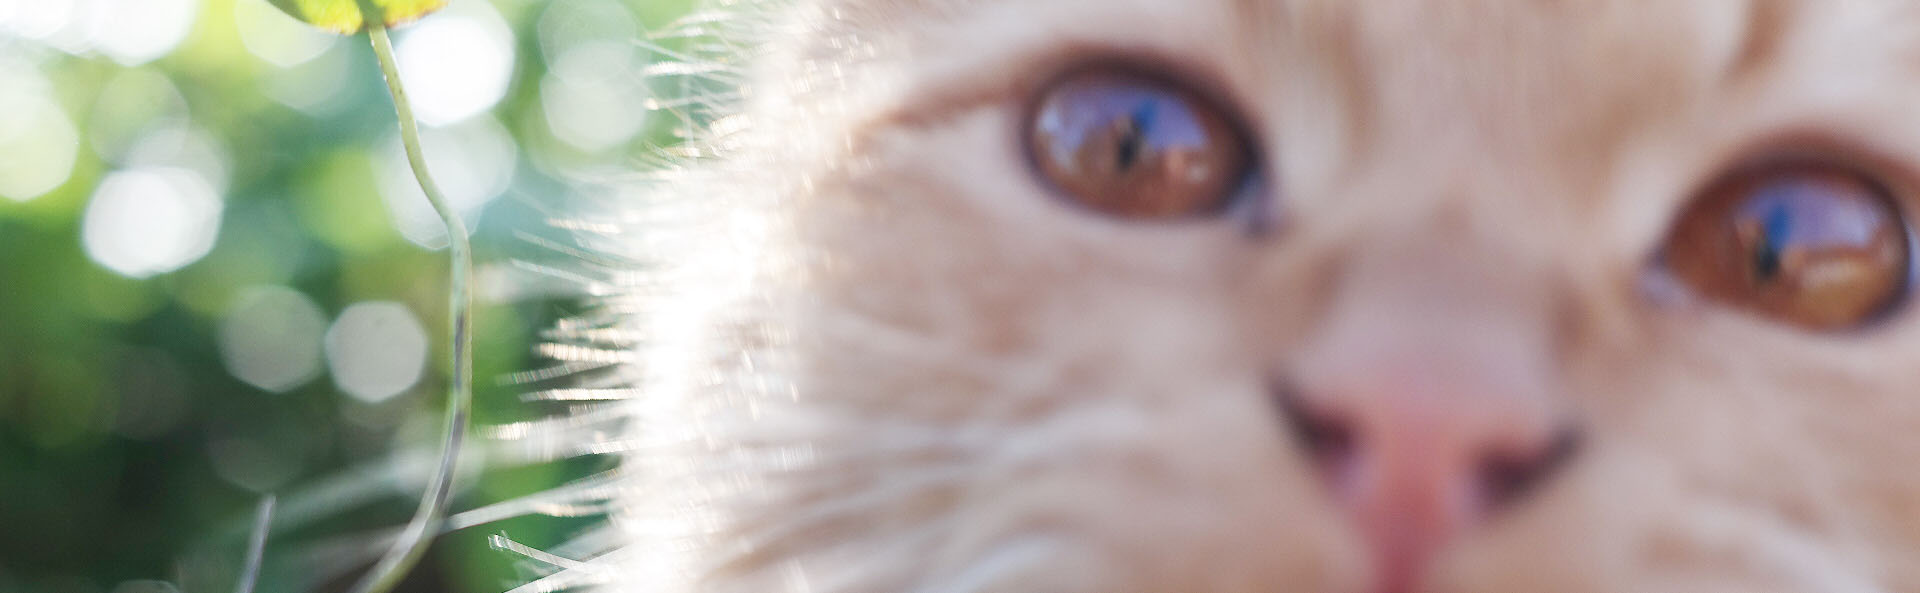 Cat up close